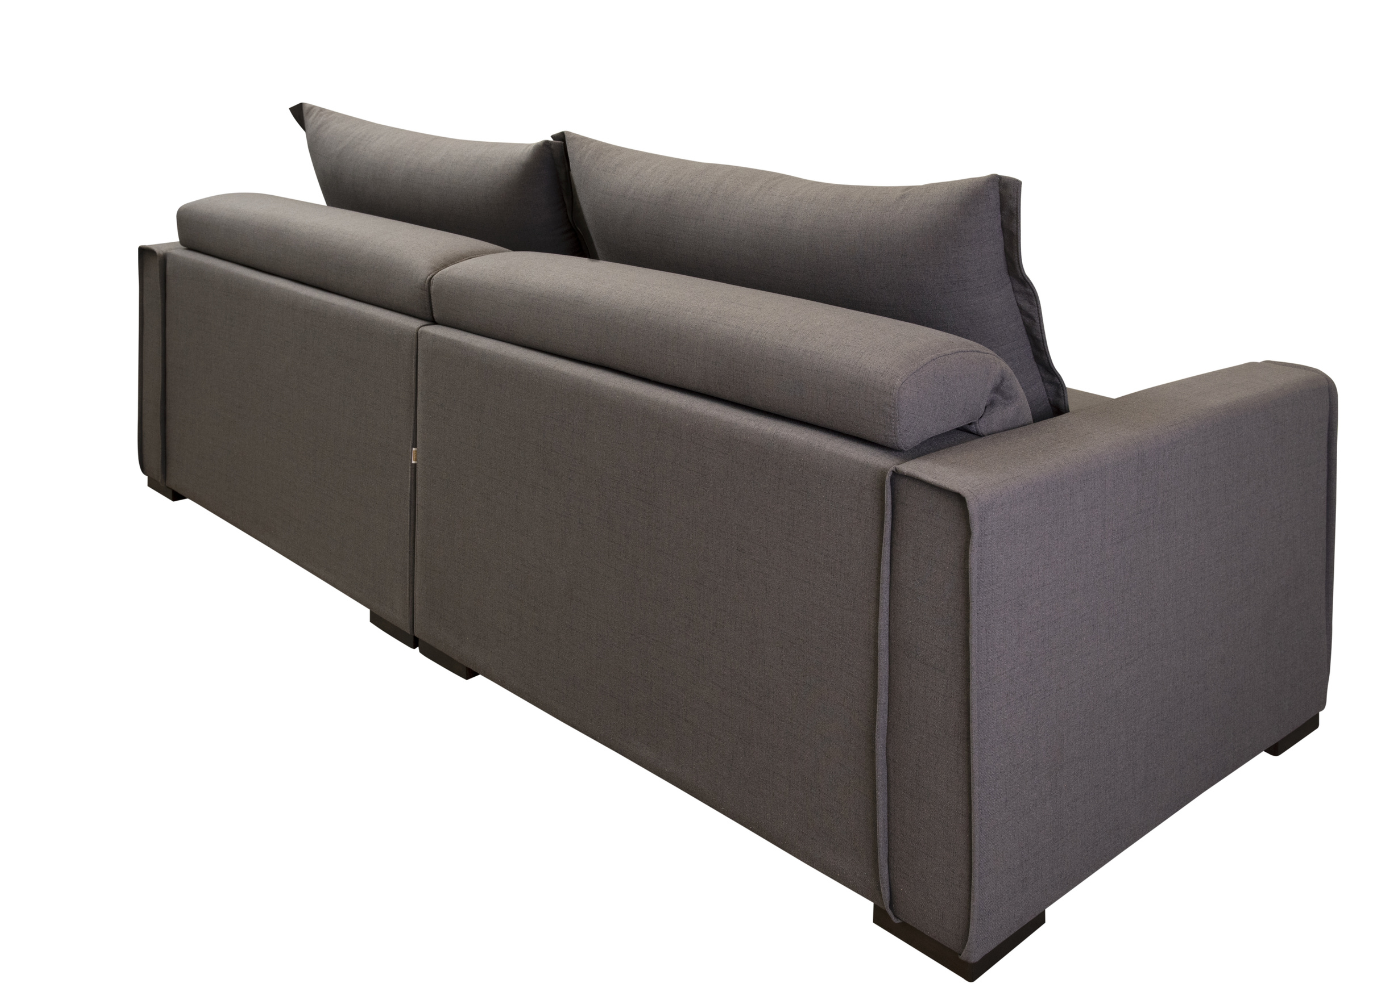 Personalize seu sofá com opções de cores vibrantes.